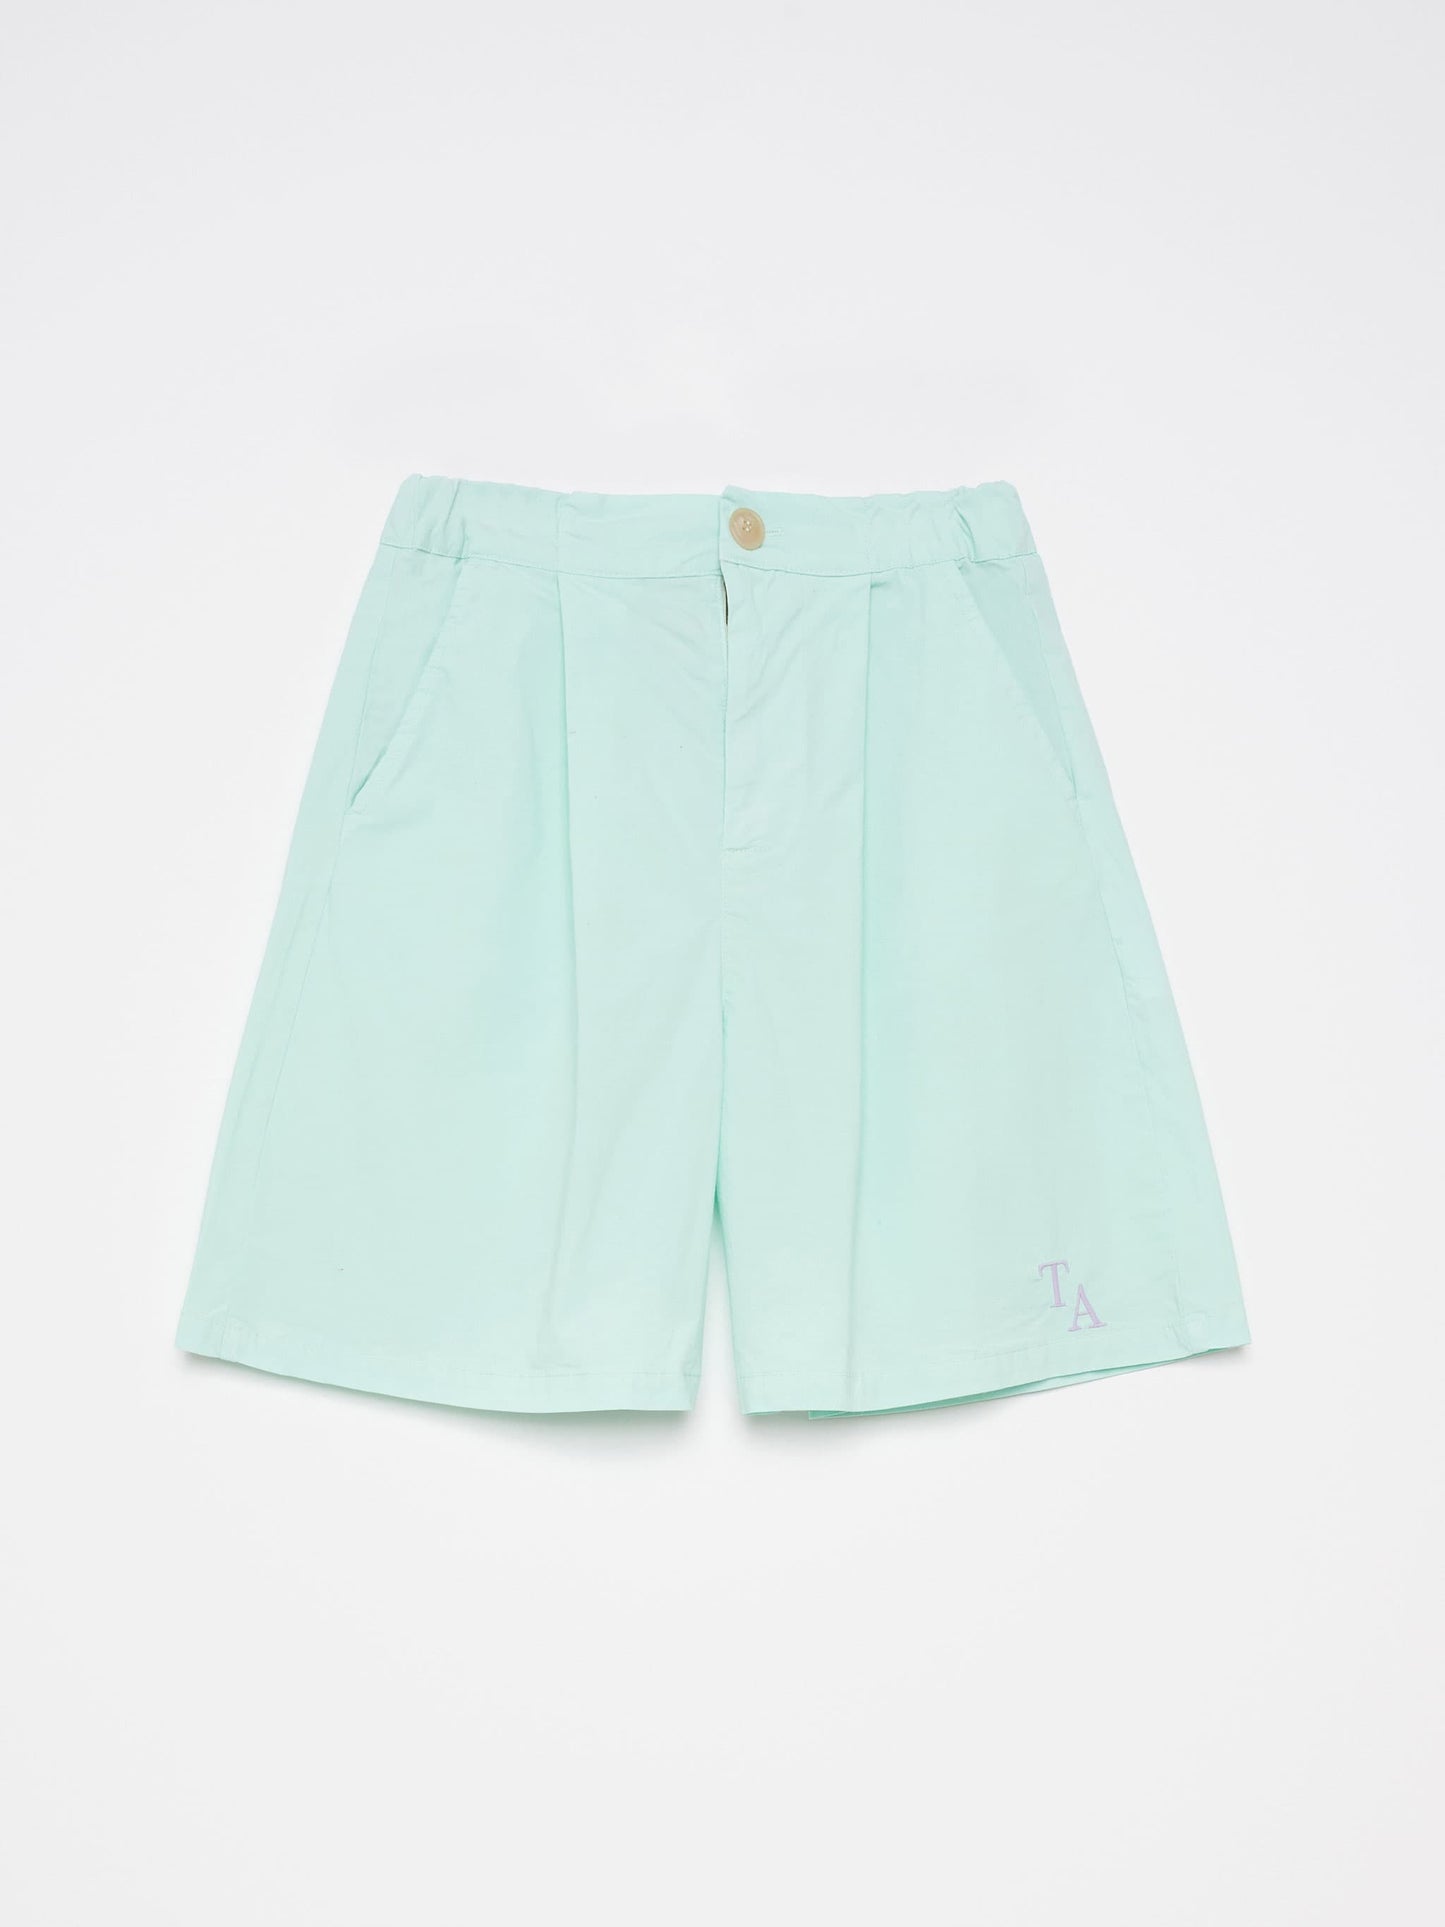 Shorts nº06 Aqua Green